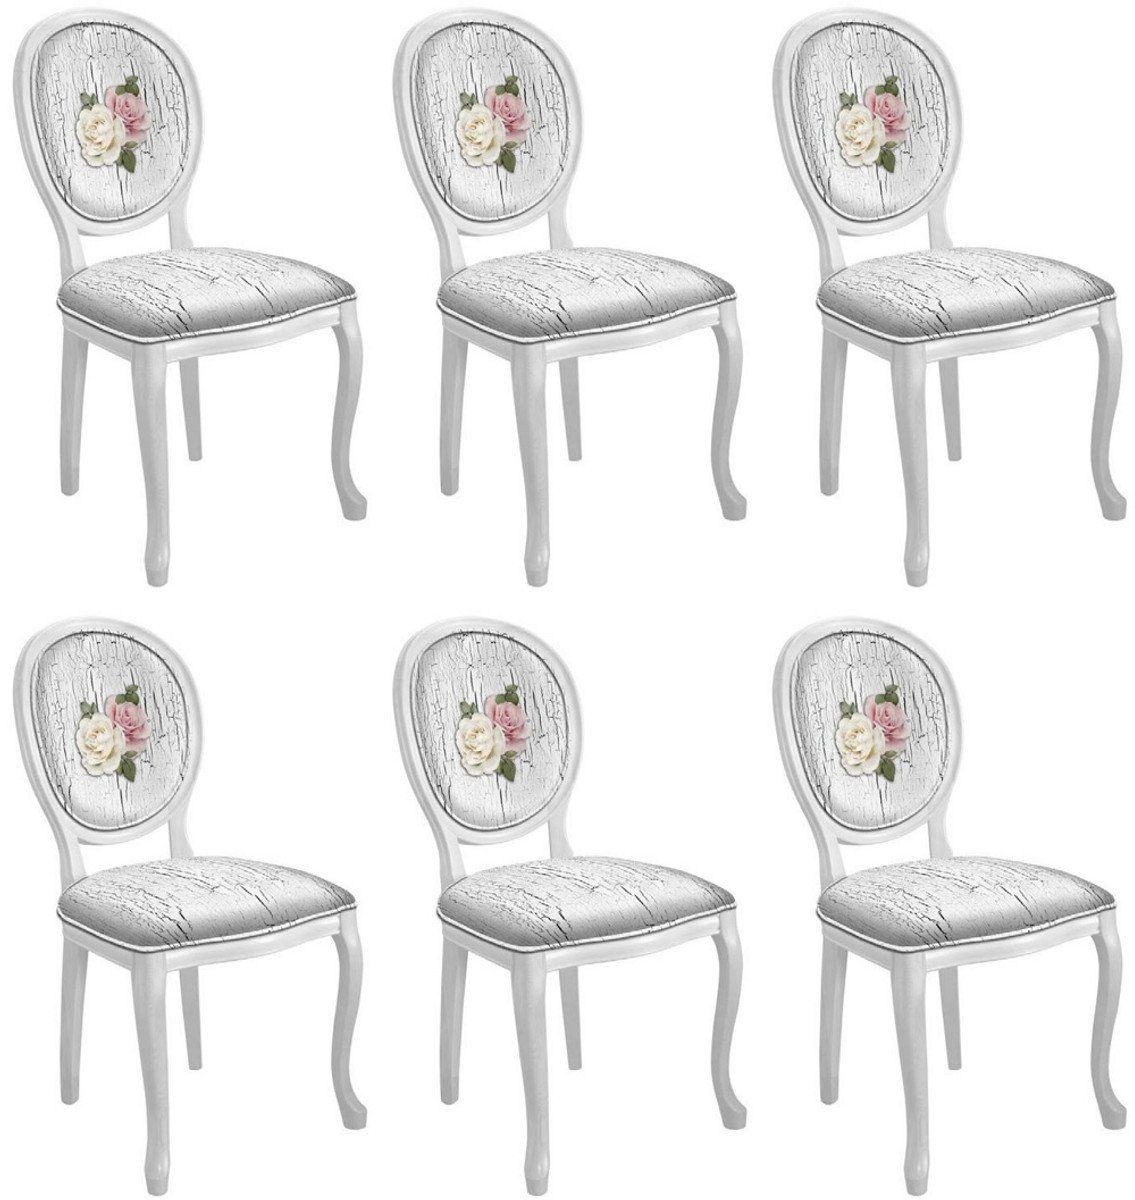 Casa Padrino Esszimmerstuhl Barock Esszimmerstuhl Set Rosen Antik Weiß / Mehrfarbig / Weiß - 6 Handgefertigte Küchen Stühle im Barockstil - Barock Esszimmer Möbel